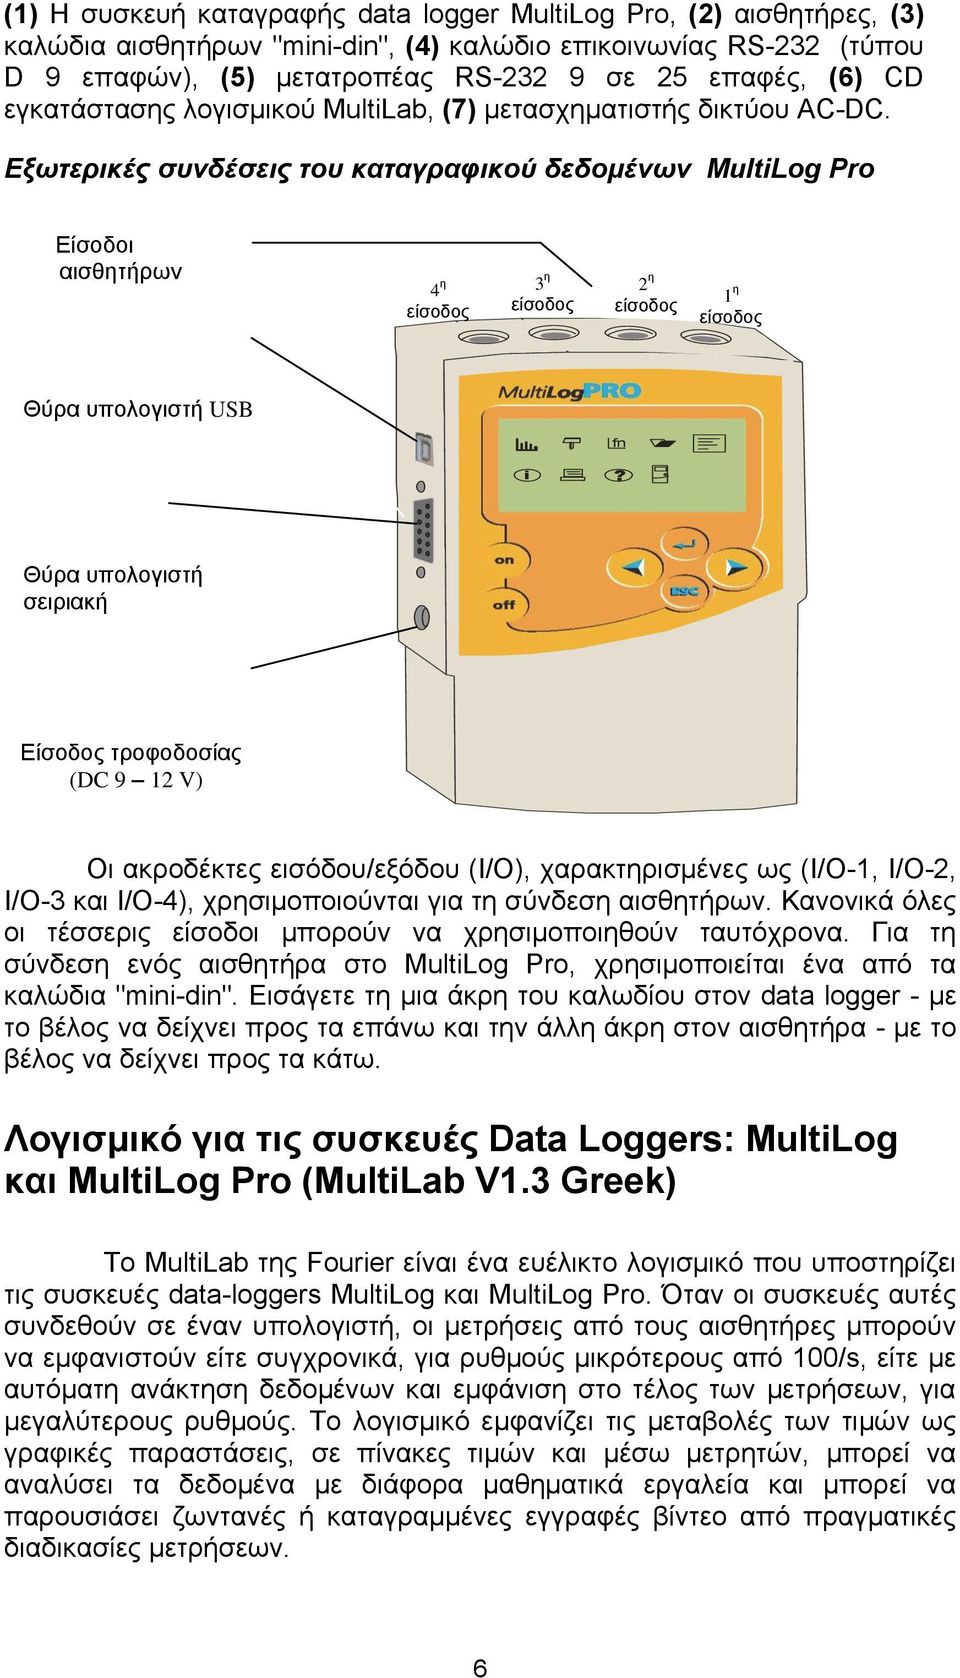 Εξωτερικές συνδέσεις του καταγραφικού δεδομένων MultiLog Pro Είσοδοι αισθητήρων 4 η είσοδος 3 η είσοδος 2 η είσοδος 1 η είσοδος Θύρα υπολογιστή USB fn?